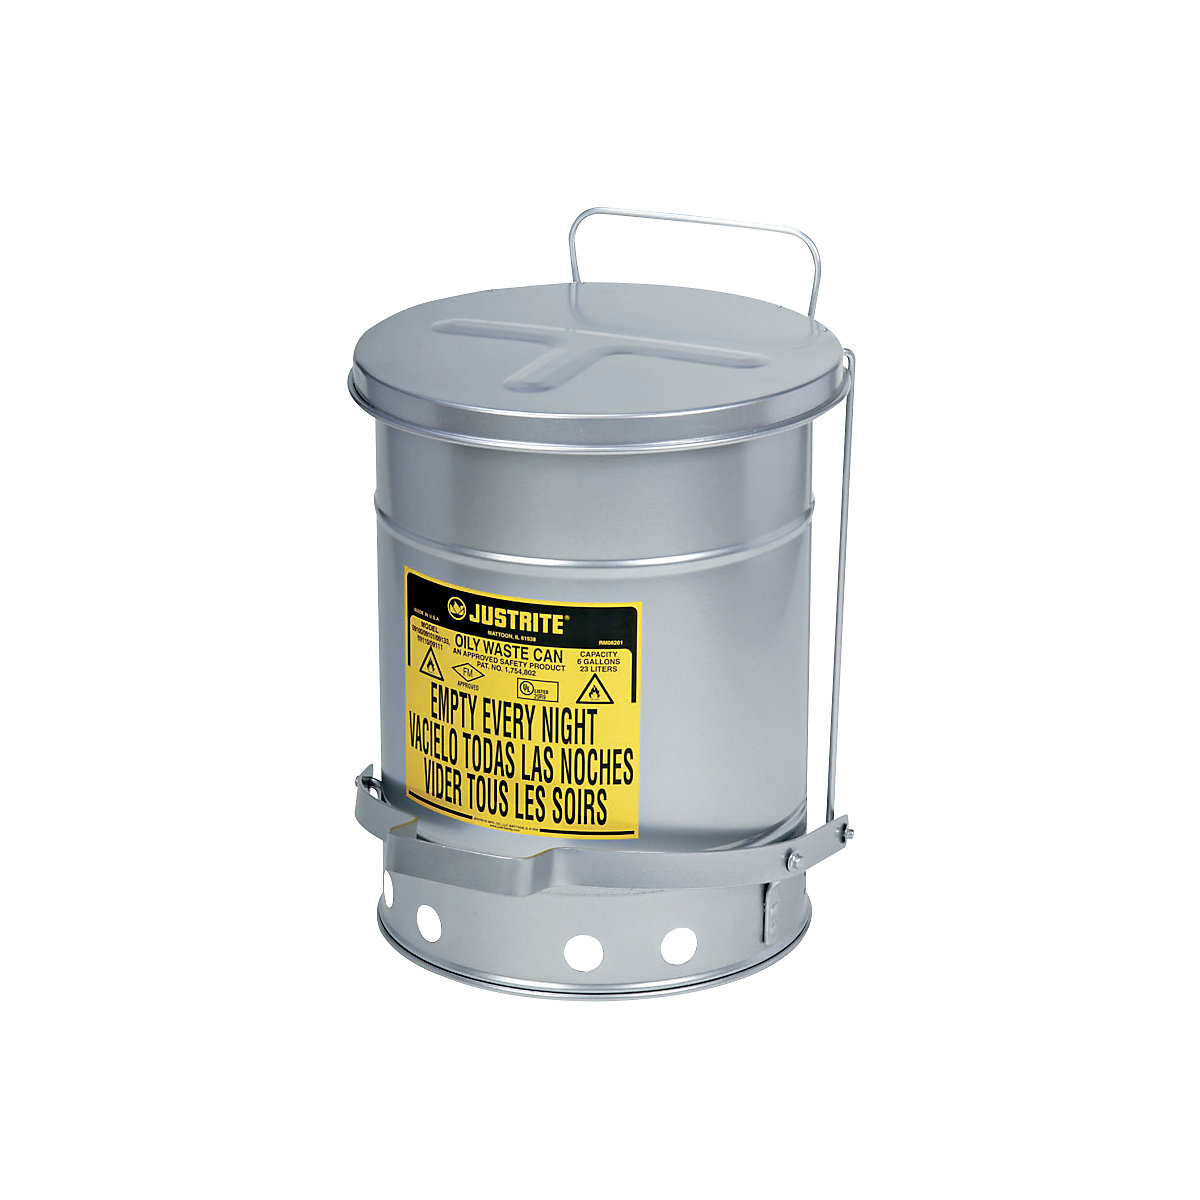 Varnostne posode za odpadke SoundGard™, z zmanjšanim hrupom – Justrite, zapiranje pokrova dušeno in tiho, srebrno lakiranje, prostornina 52 l-6